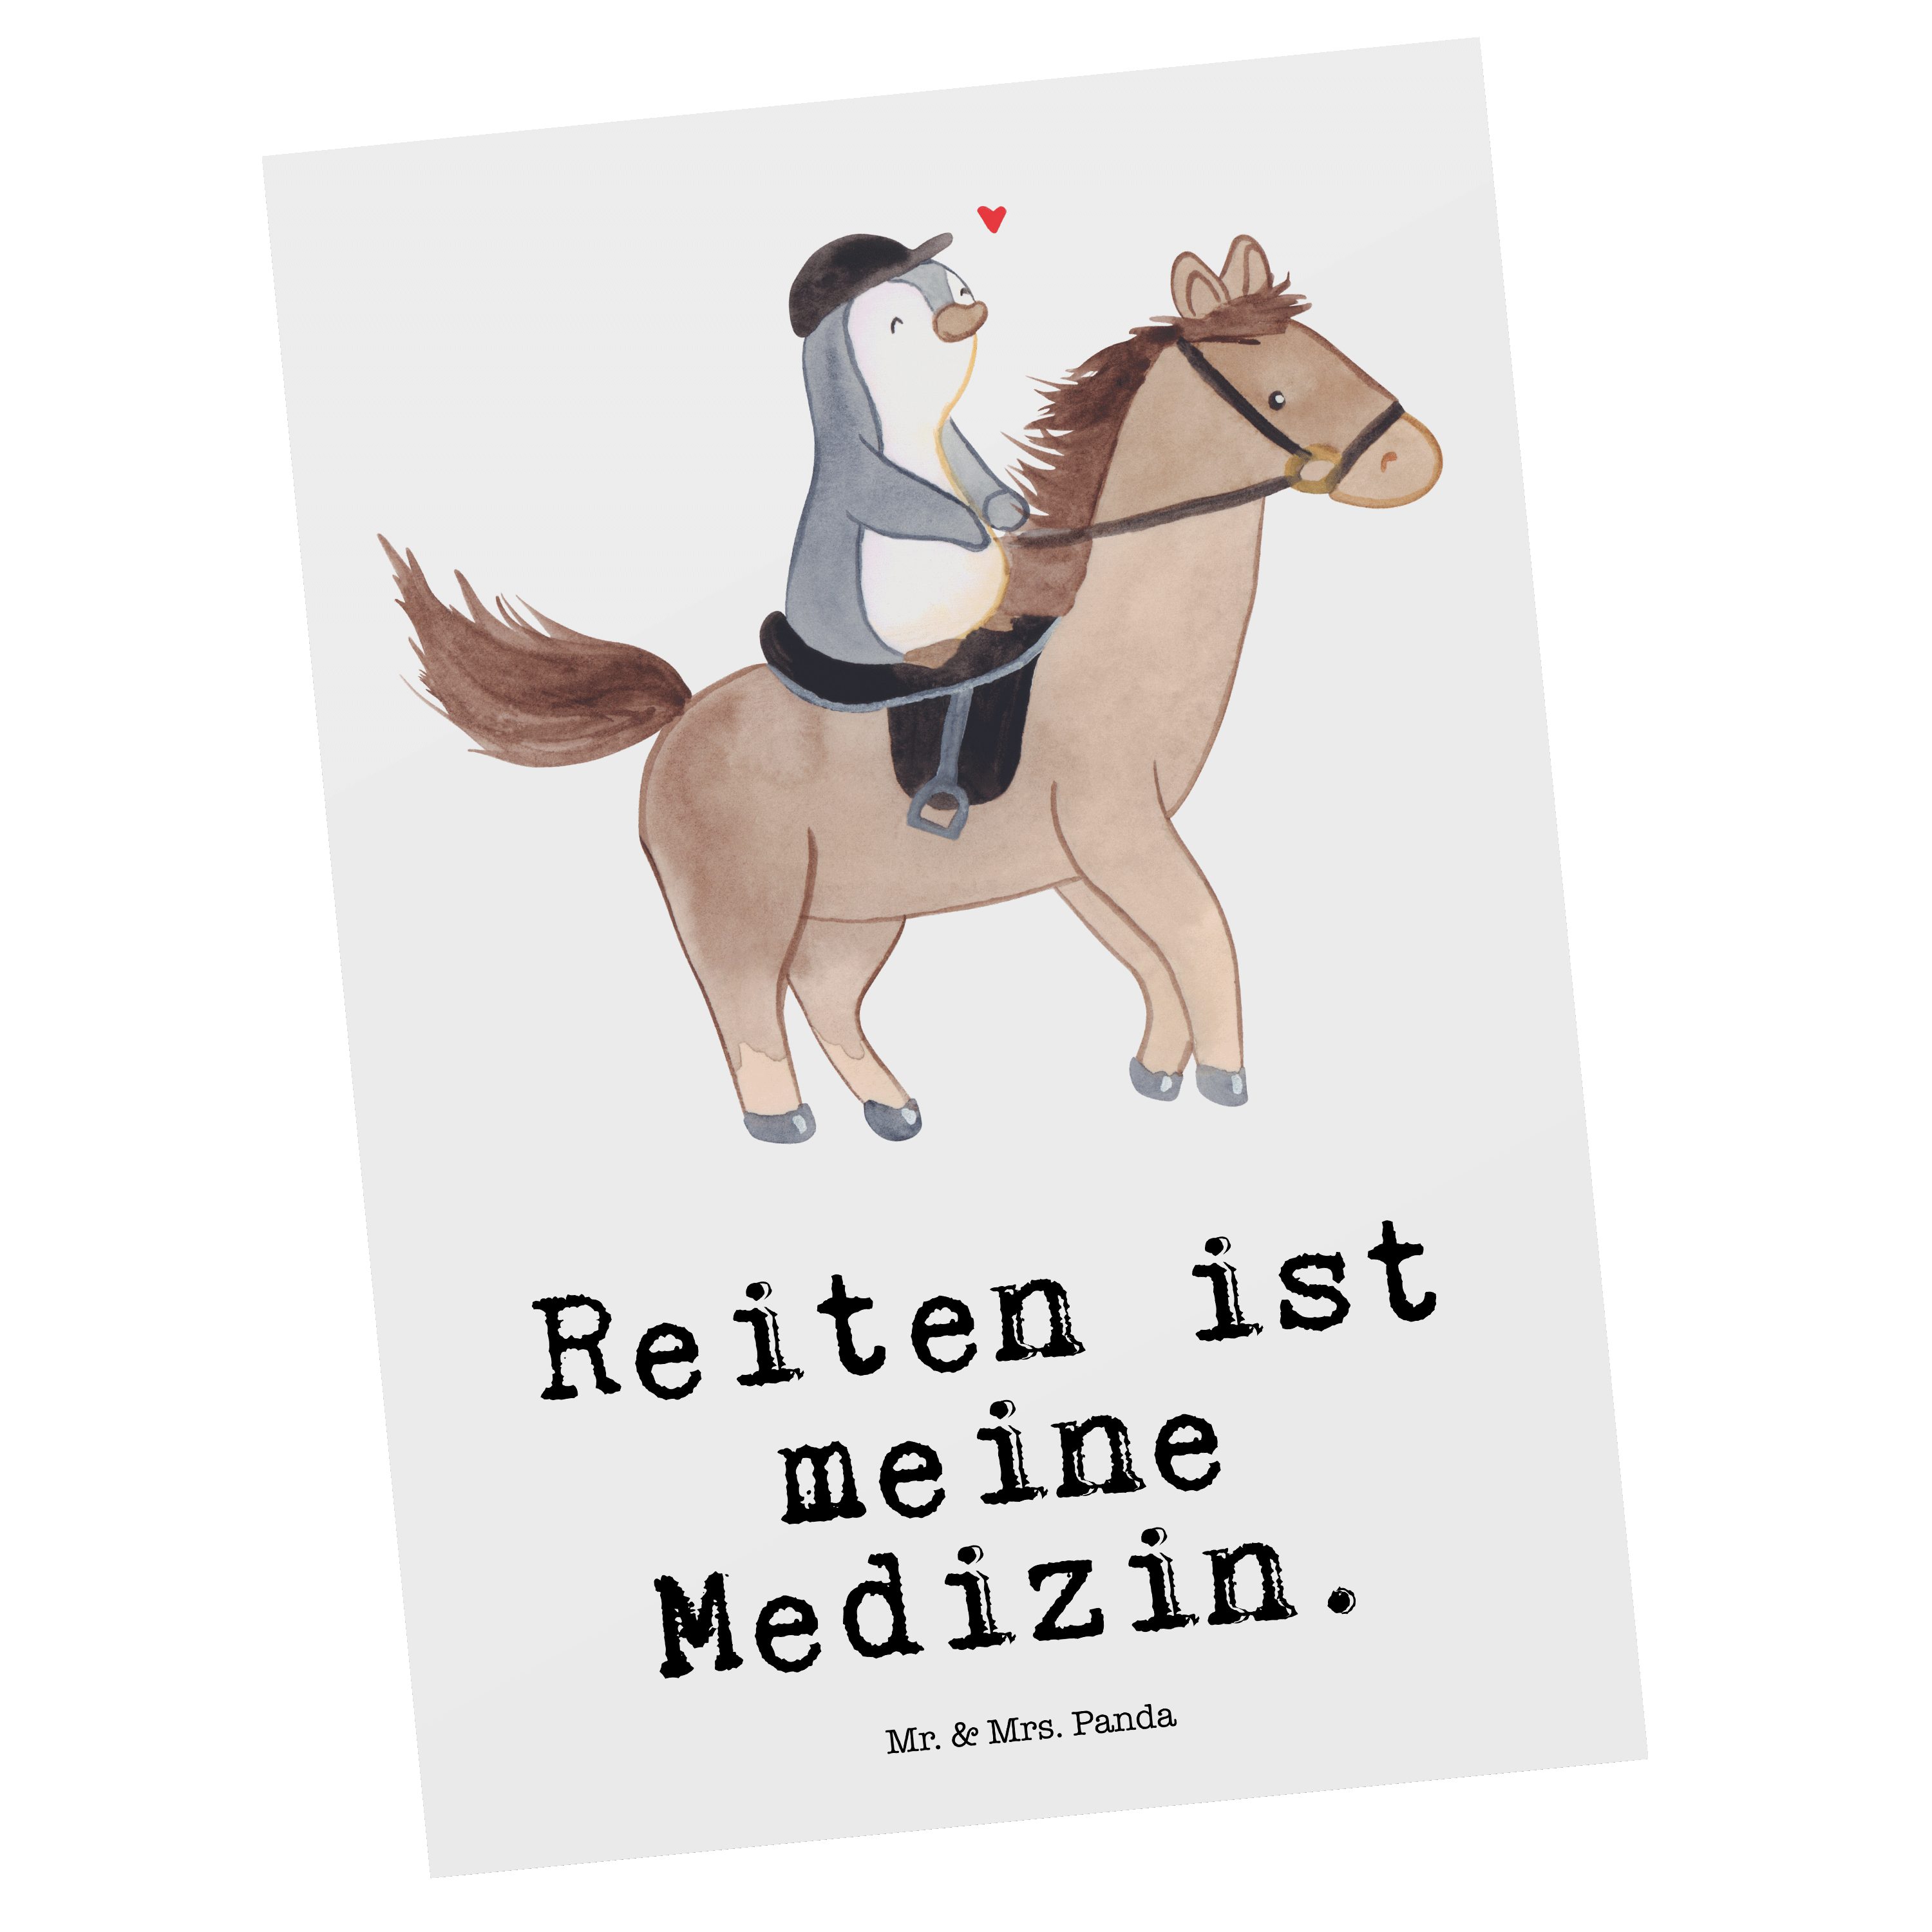 Mr. & Mrs. Panda Postkarte Pferd Reiten Medizin - Weiß - Geschenk, Pferdereiten, Einladungskarte